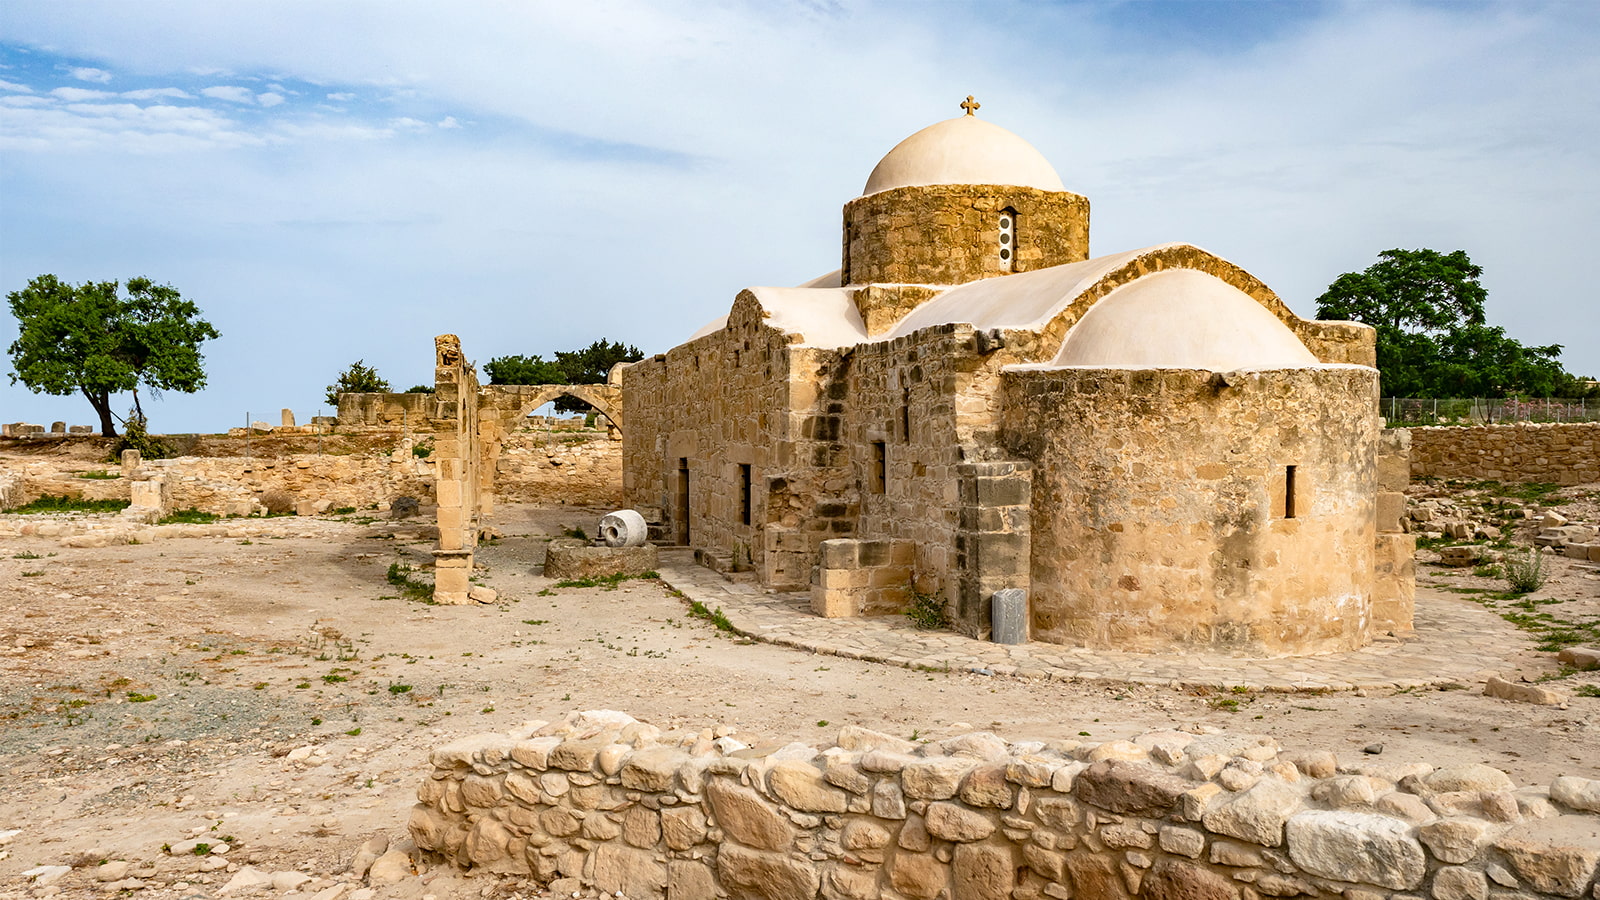 Igreja-nas-ruinas-de-Paphos 